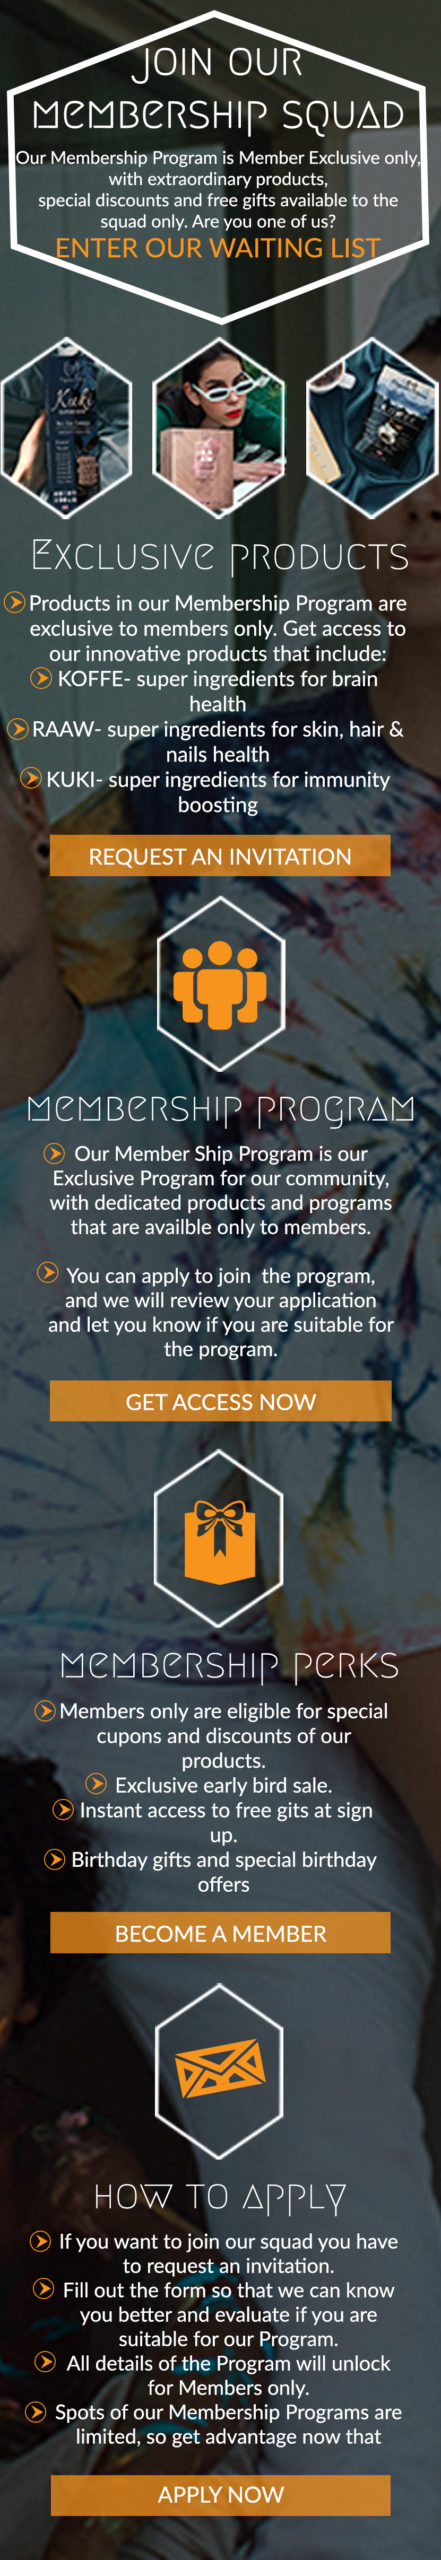 memebership program mobile join ing in, enter here to join